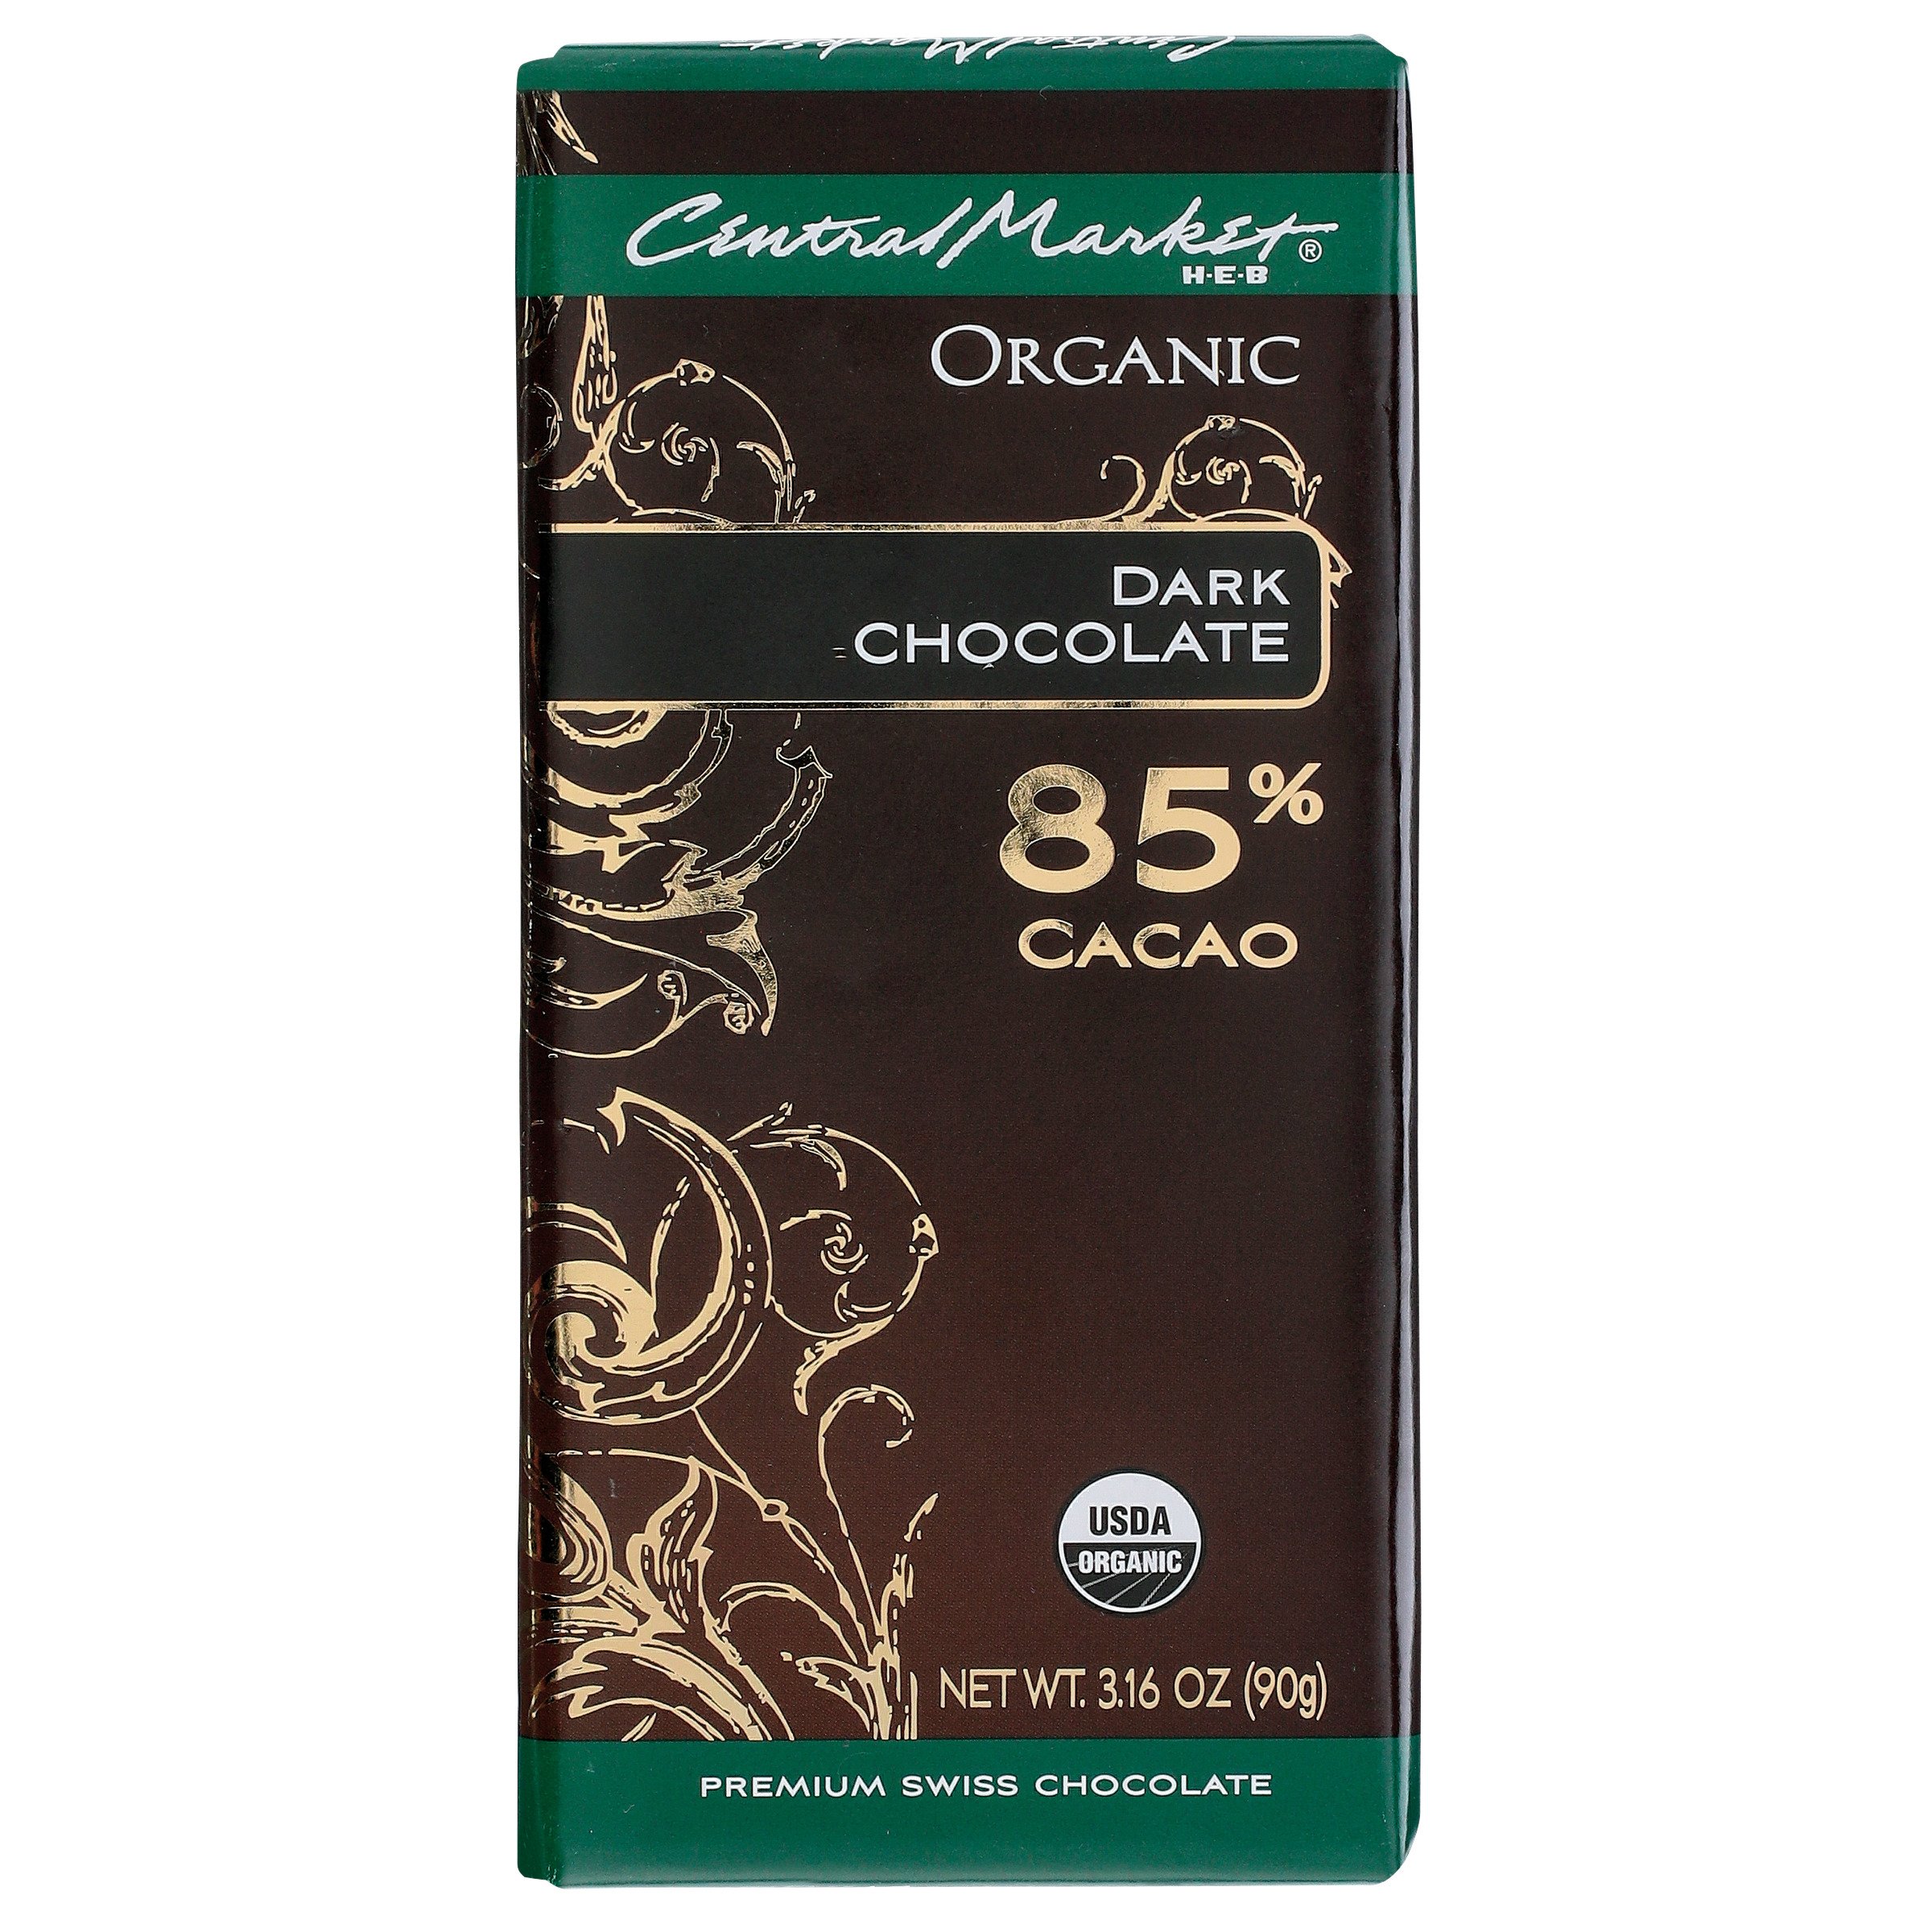 Organic dark chocolate